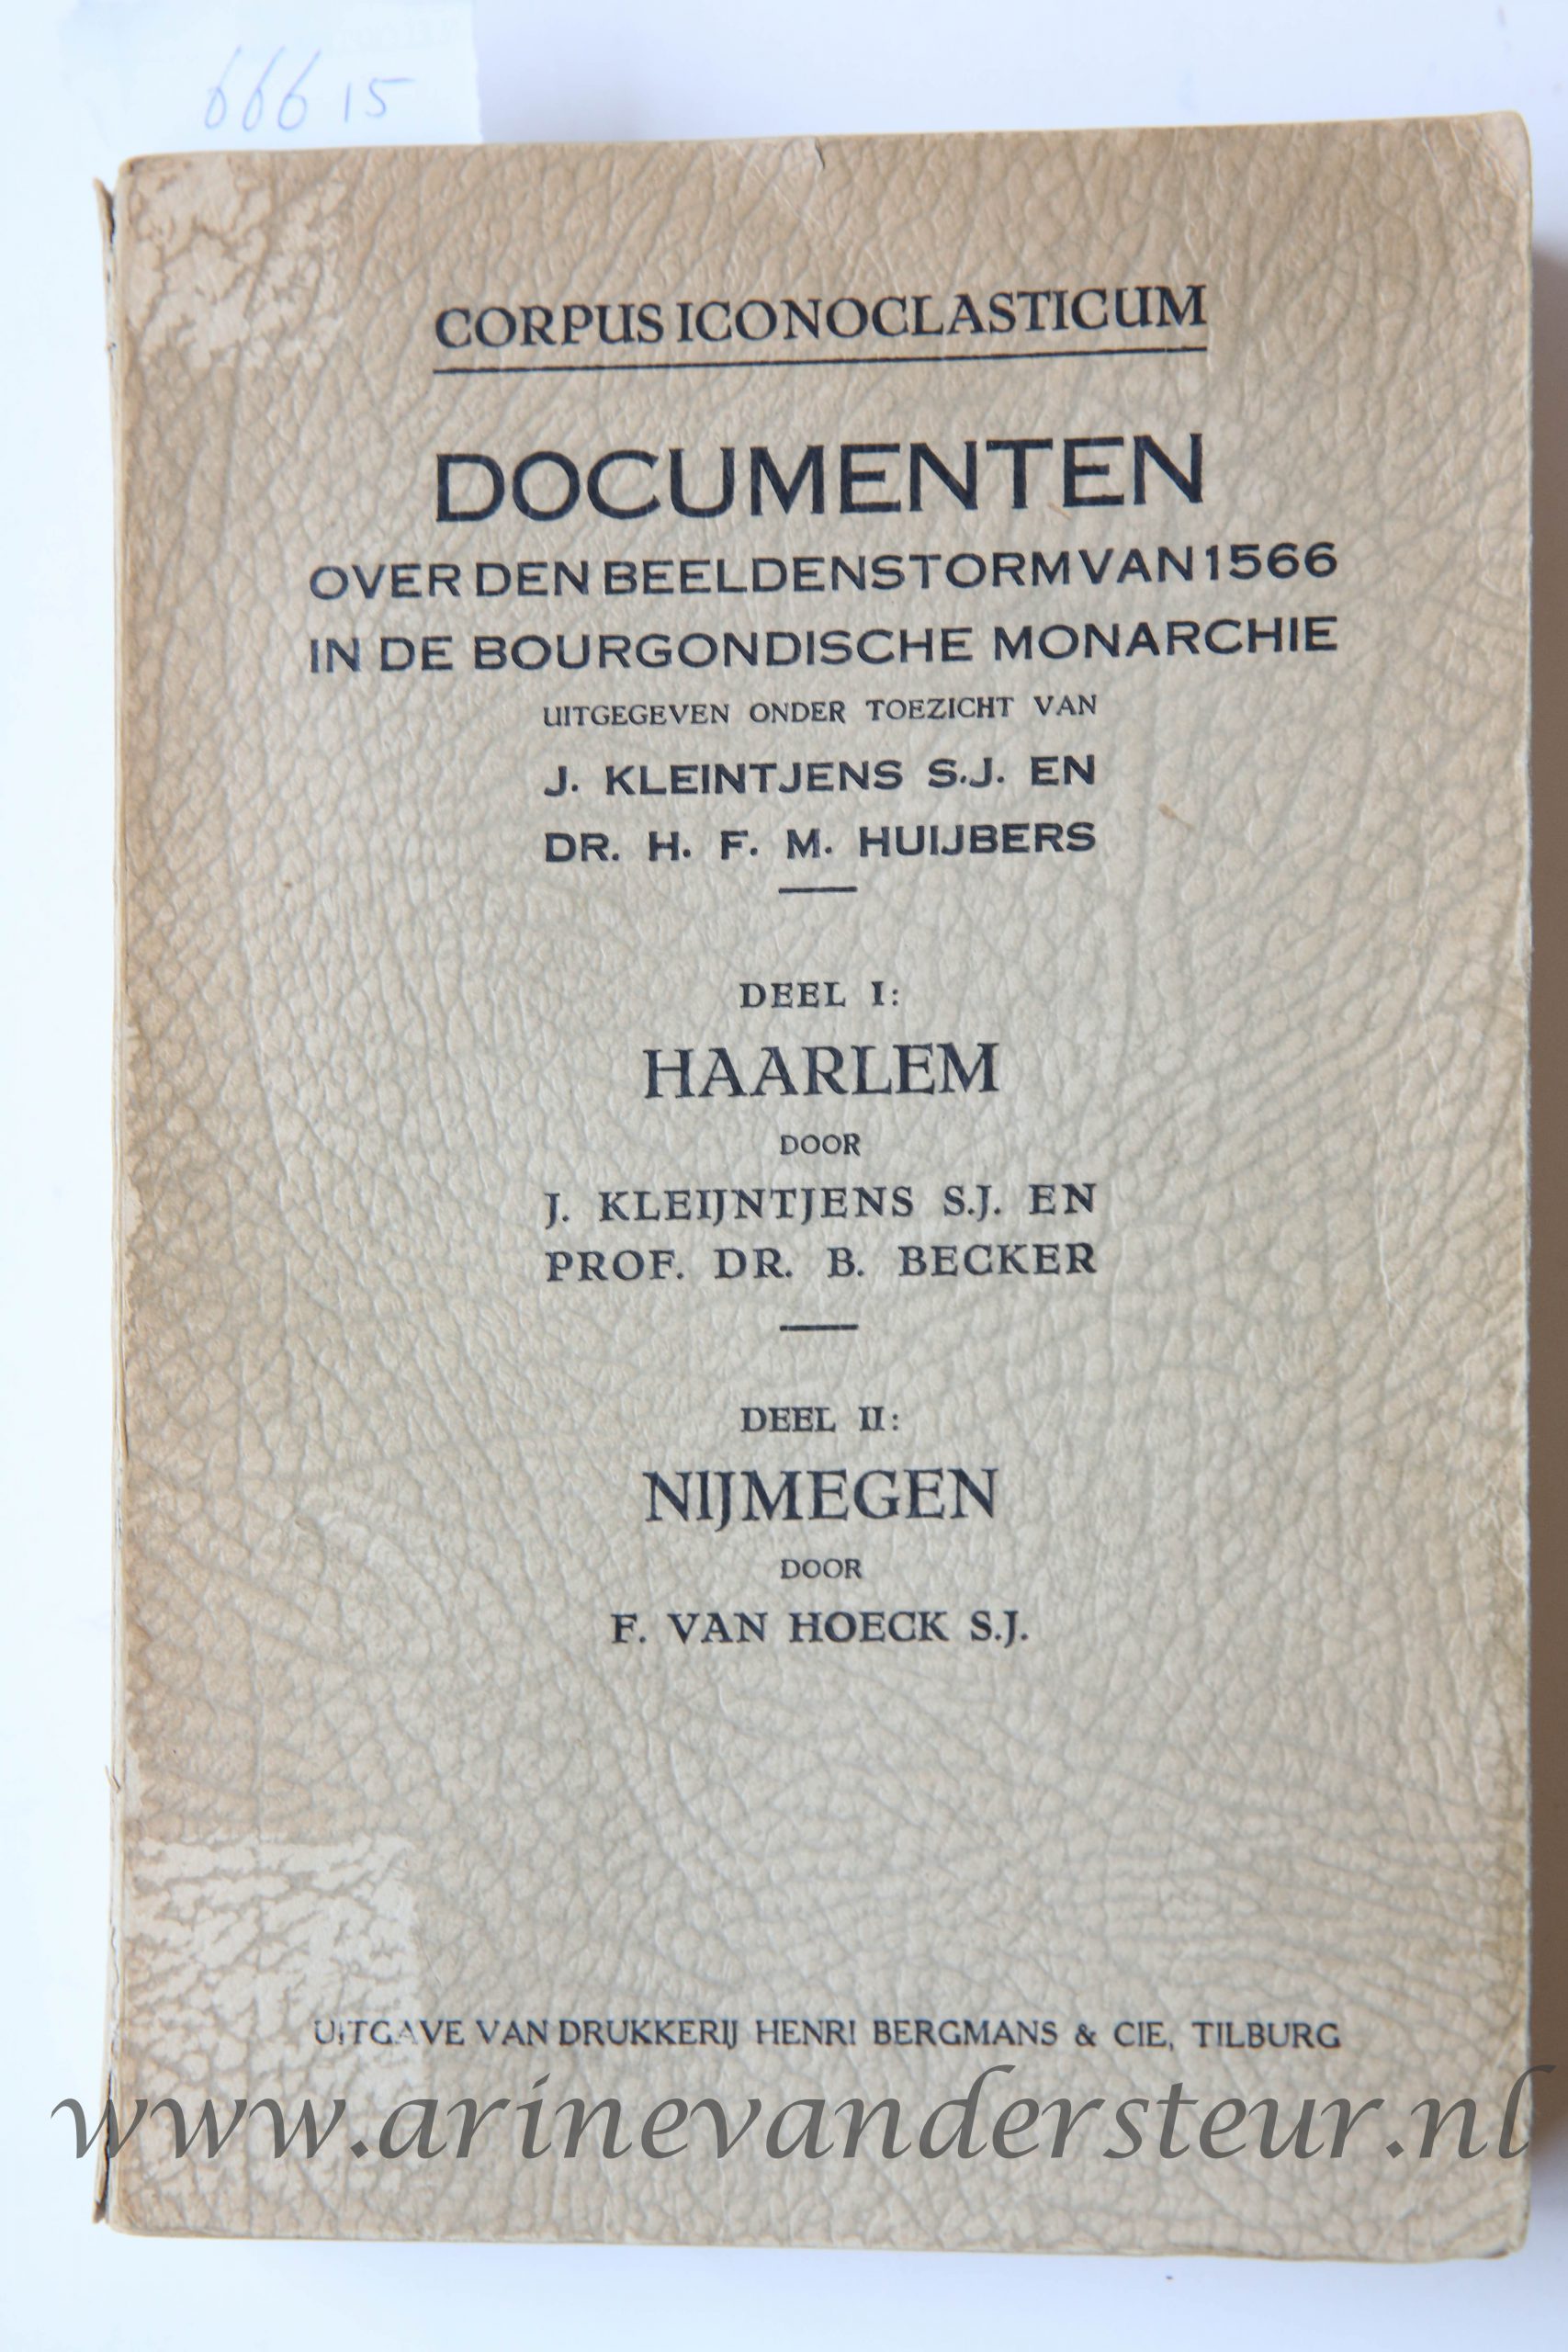 Corpus Iconoclasticum. Documenten over den Beeldenstorm van 1566 in de Bourgondische Monarchie, Uitgave van drukkerij Henri Bergmans & Cie Tilburg, 536 pp.